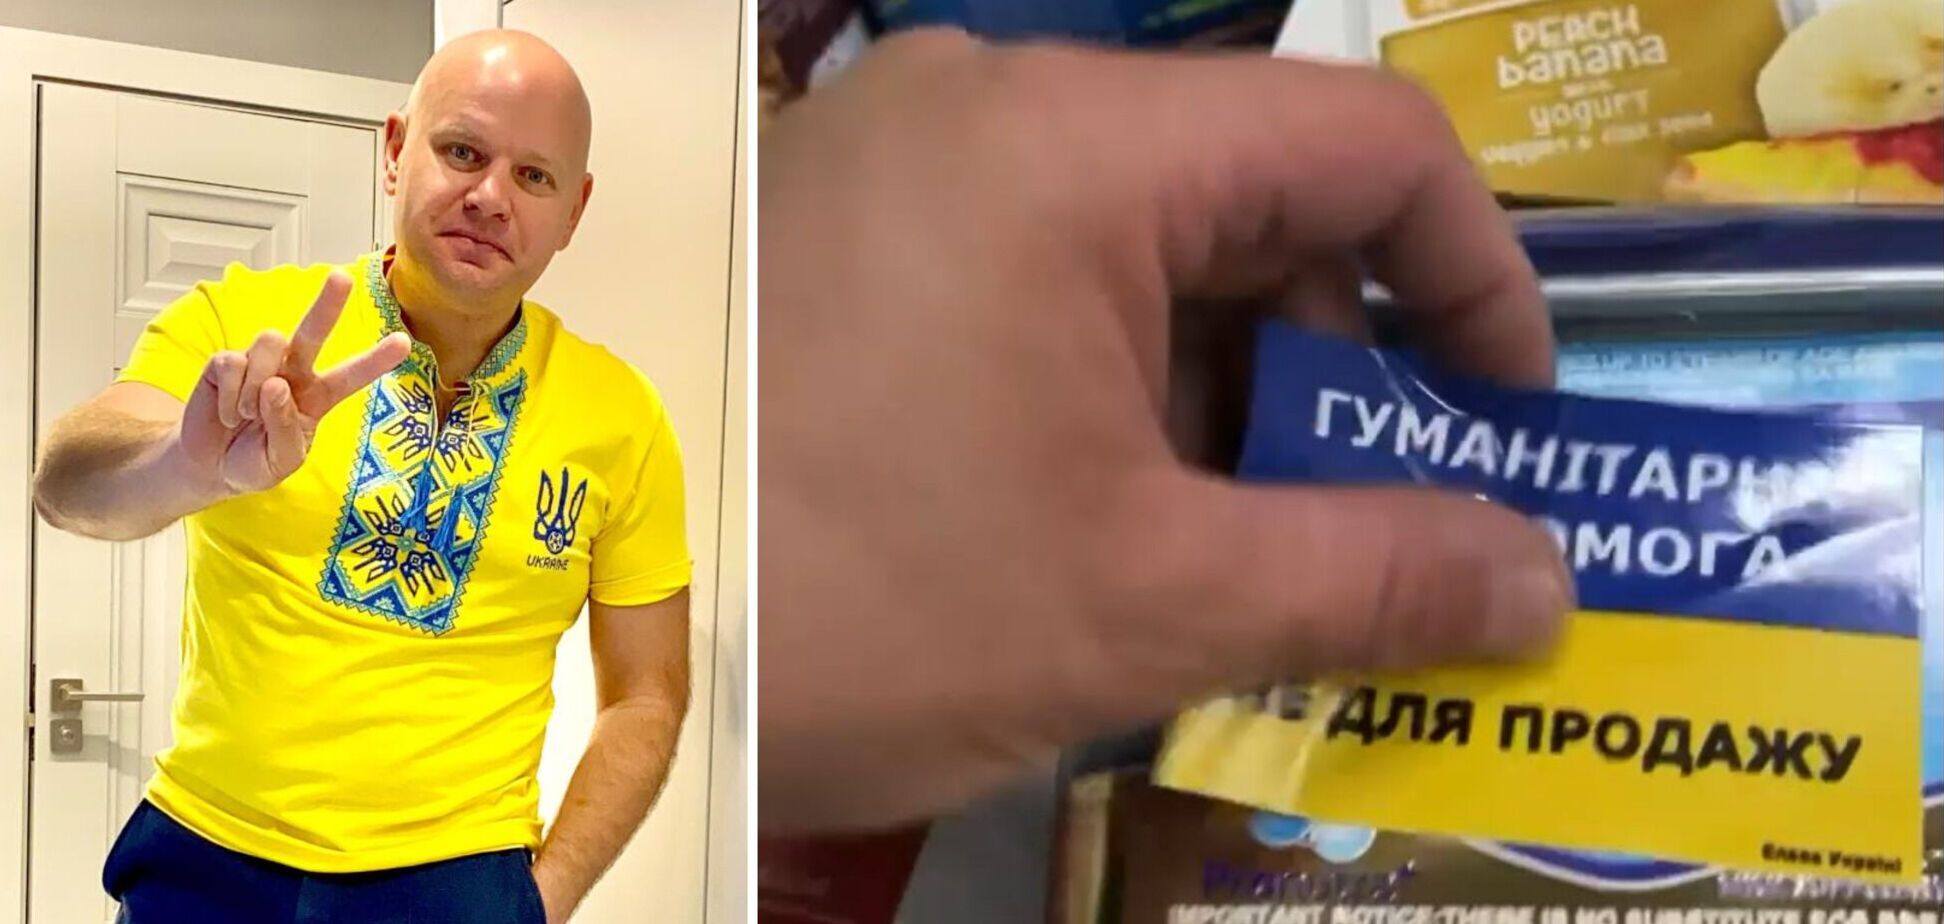 Щоб 'гуманітарка' не з'являлась на полицях магазинів: волонтер Данило Щербаков дав дієву пораду